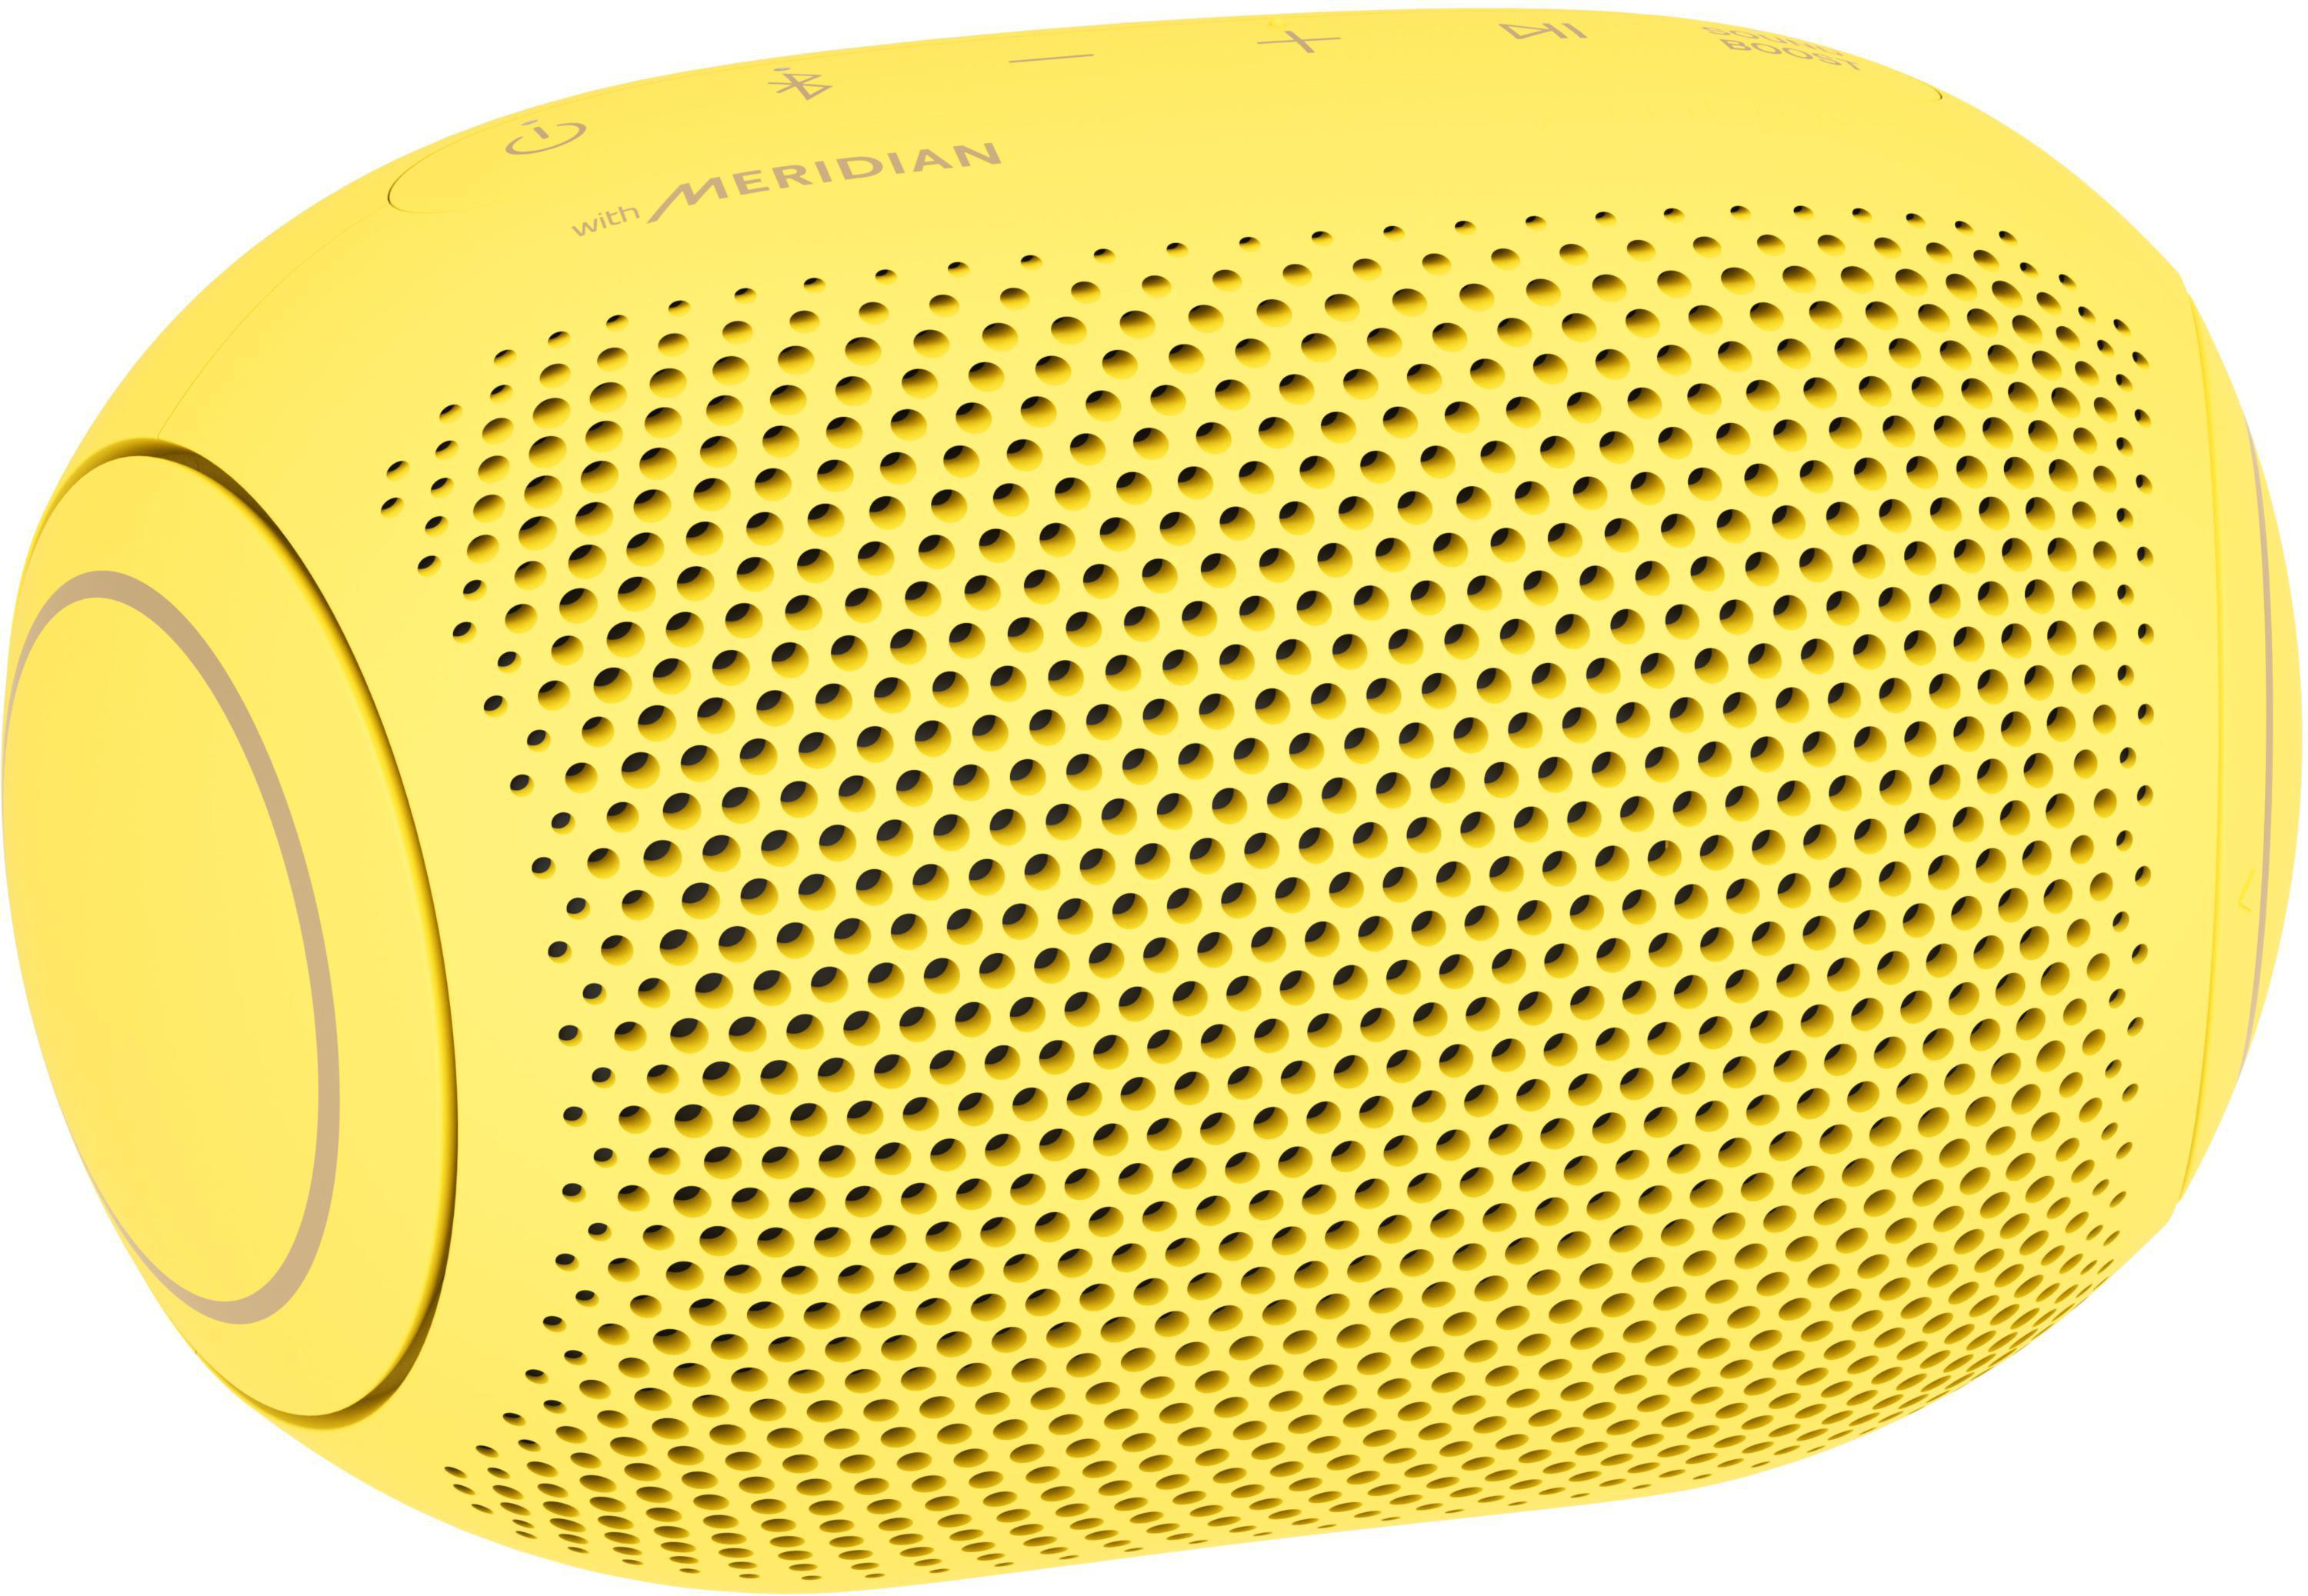 LG Bluetooth Lemon In-ear Kopfhörer HBS-FN6.APL2S, Weiß/Sour